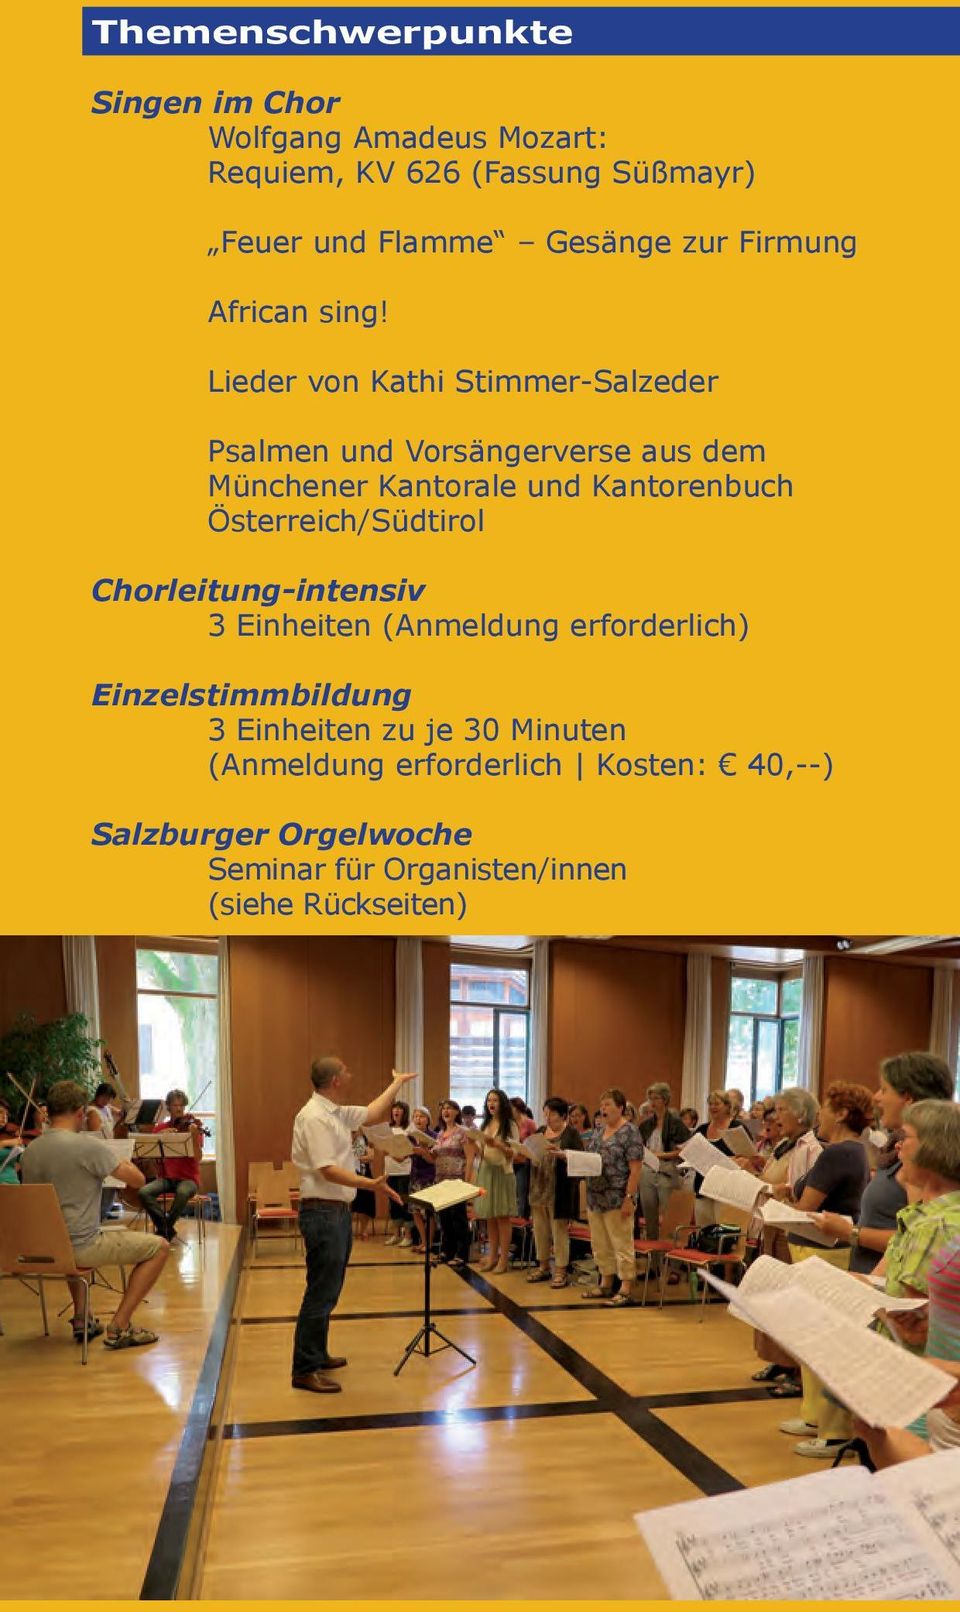 Lieder von Kathi Stimmer-Salzeder Psalmen und Vorsängerverse aus dem Münchener Kantorale und Kantorenbuch